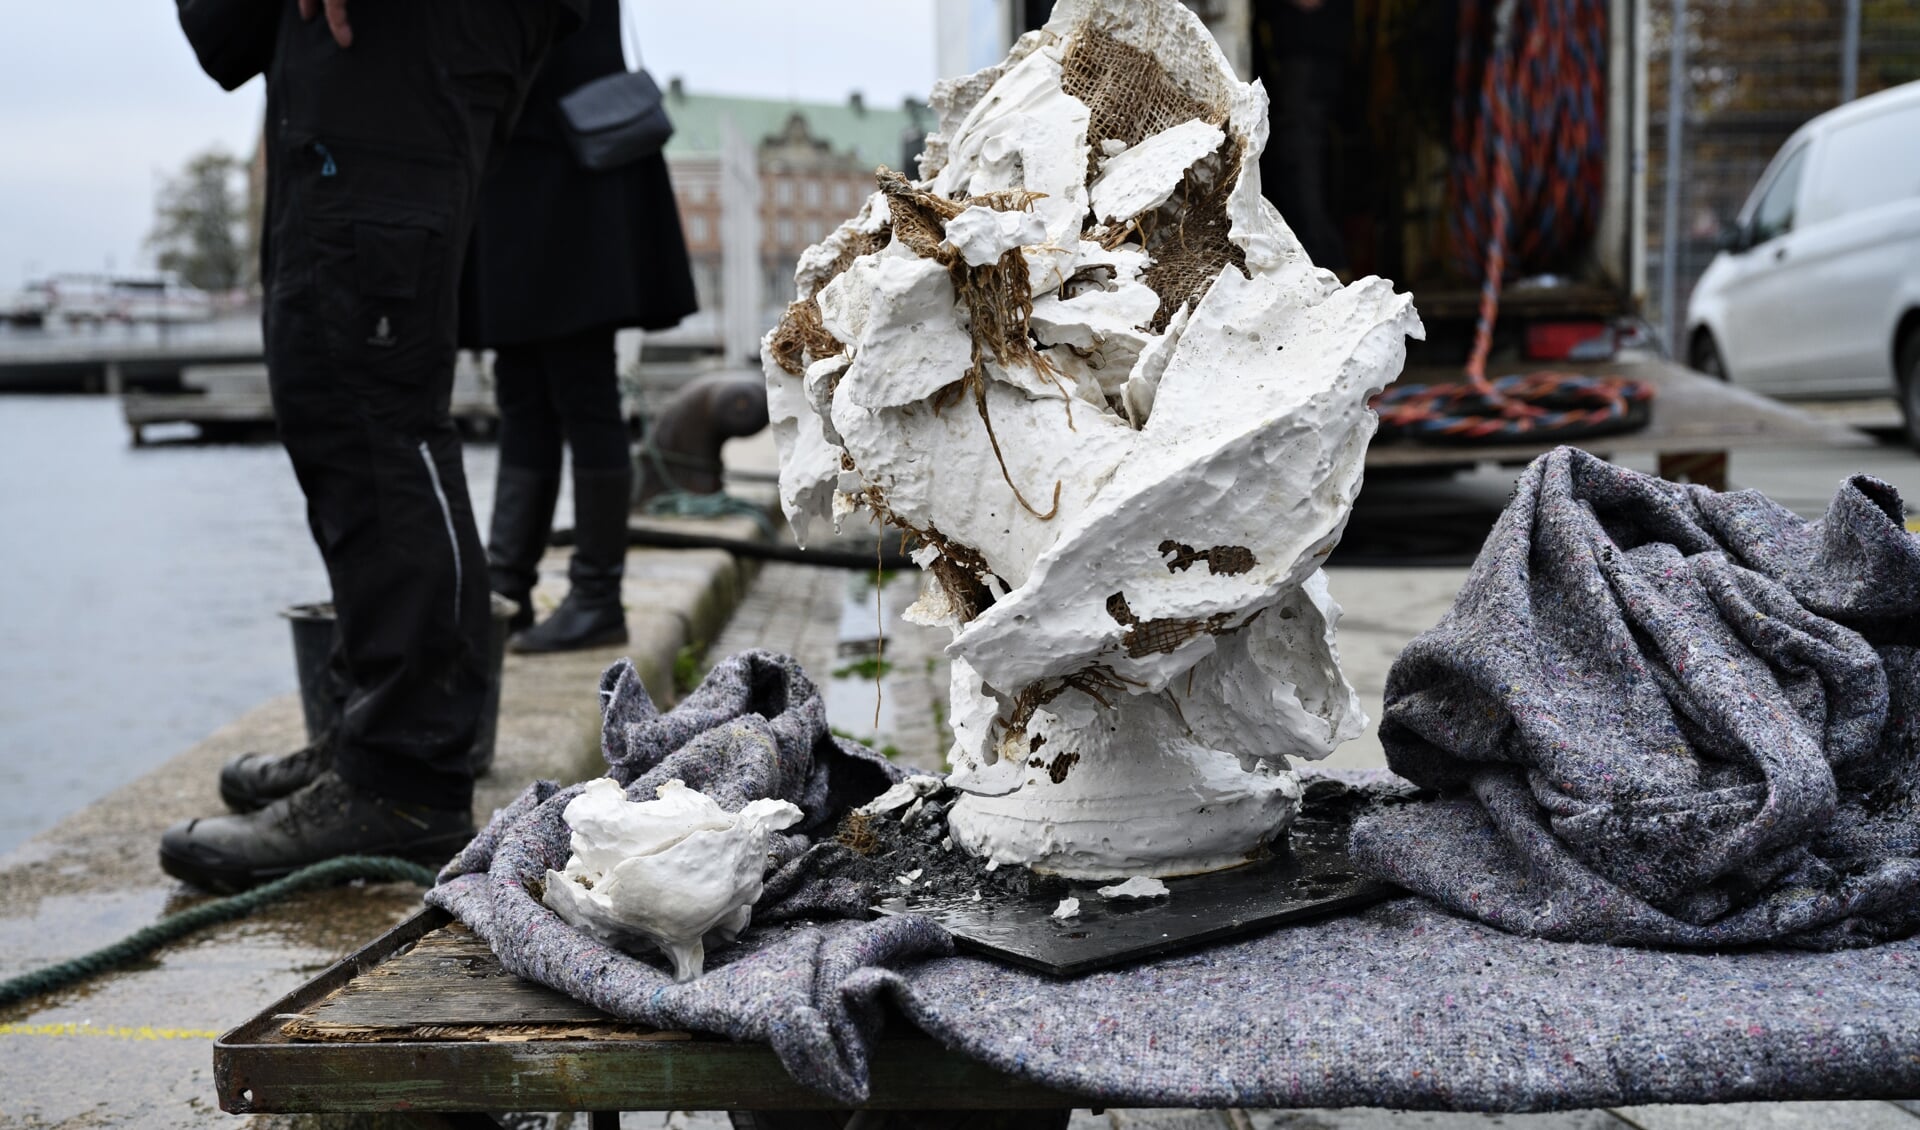 Efter at have været smidt i havnen var busten af Frederik V ødelagt. Aktionen førte til udskiftninger i Kunstakademiets ledelse. Arkivfoto: 